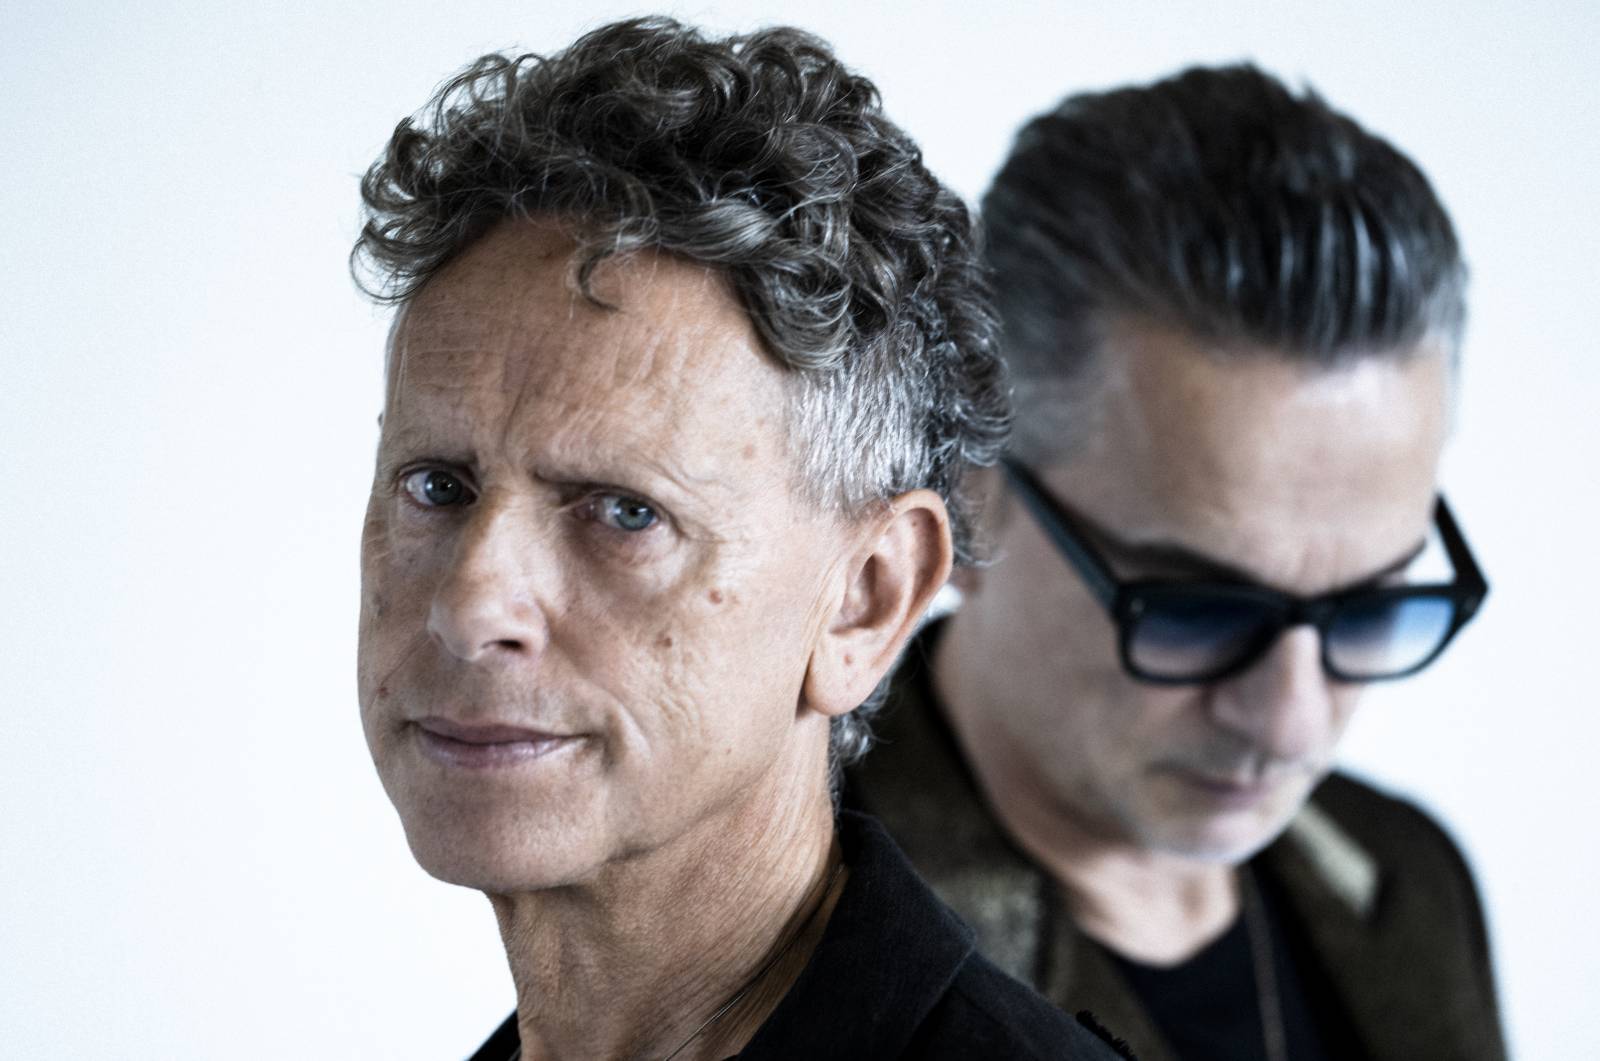 Zahraniční nominační tipy Žebříku (II.): Zvítězit mezi skupinami mohou Depeche Mode, Foo Fighters či Mäneskin, bodovat můžou i jejich alba